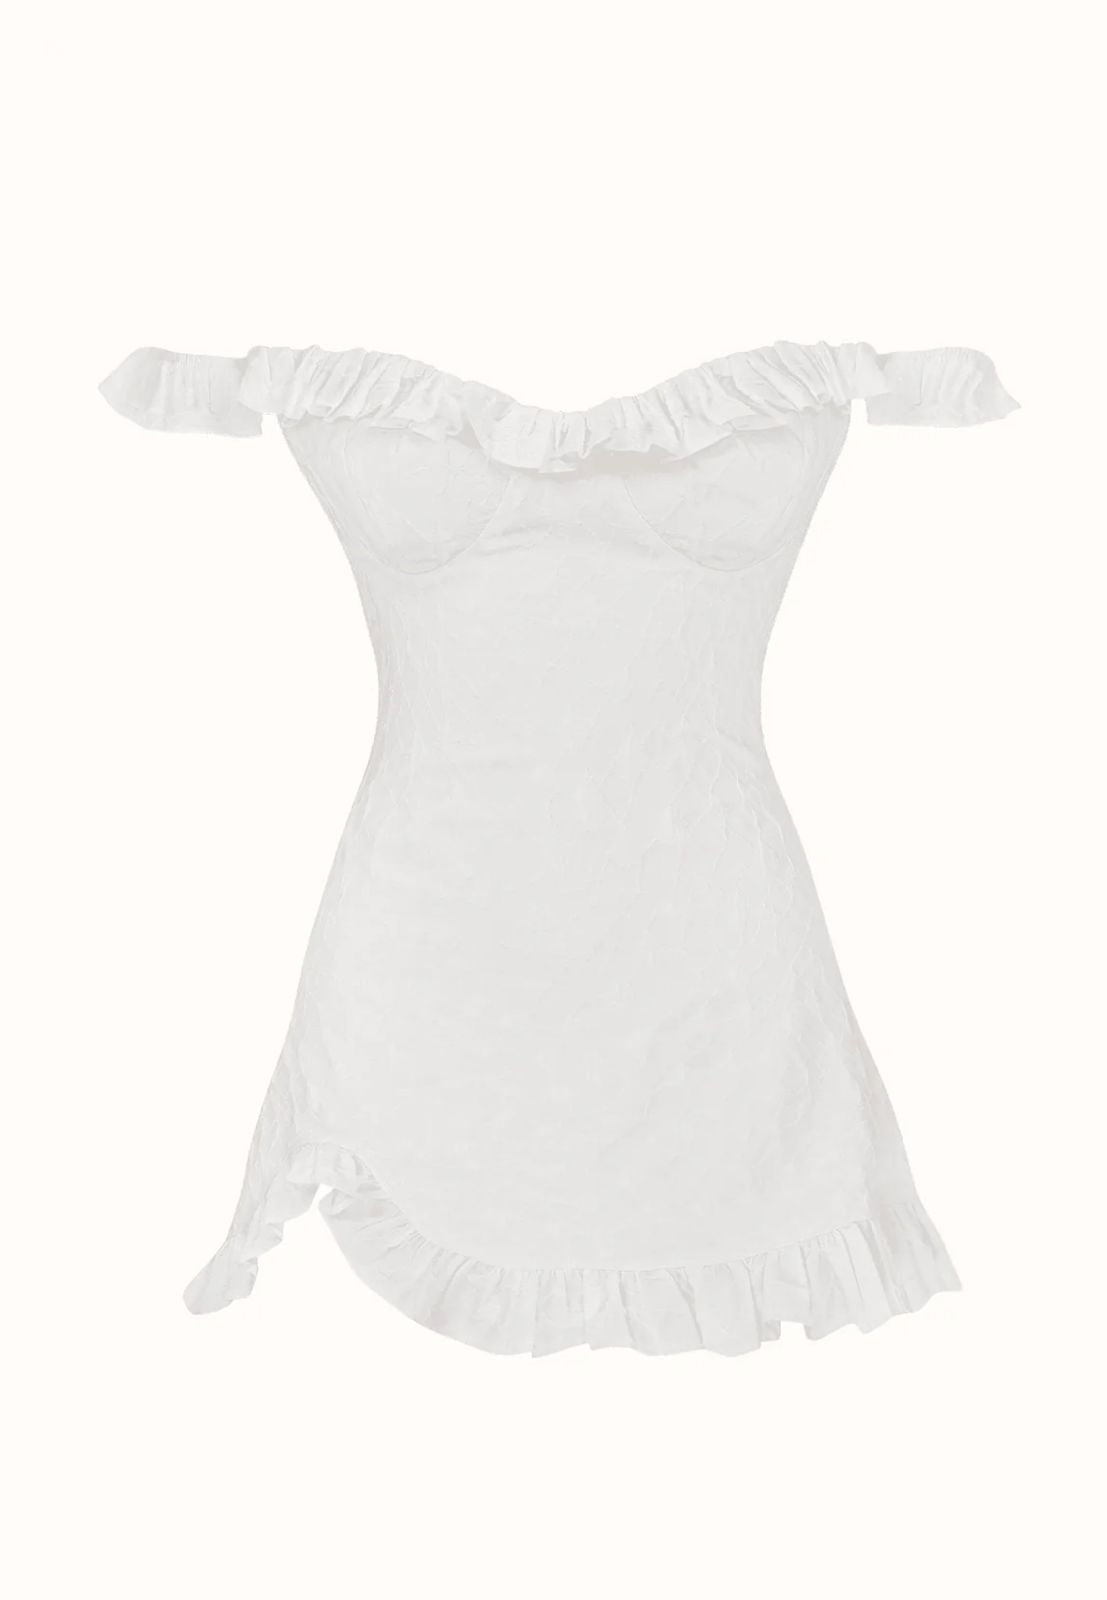 ROSE DRESS - WHITE